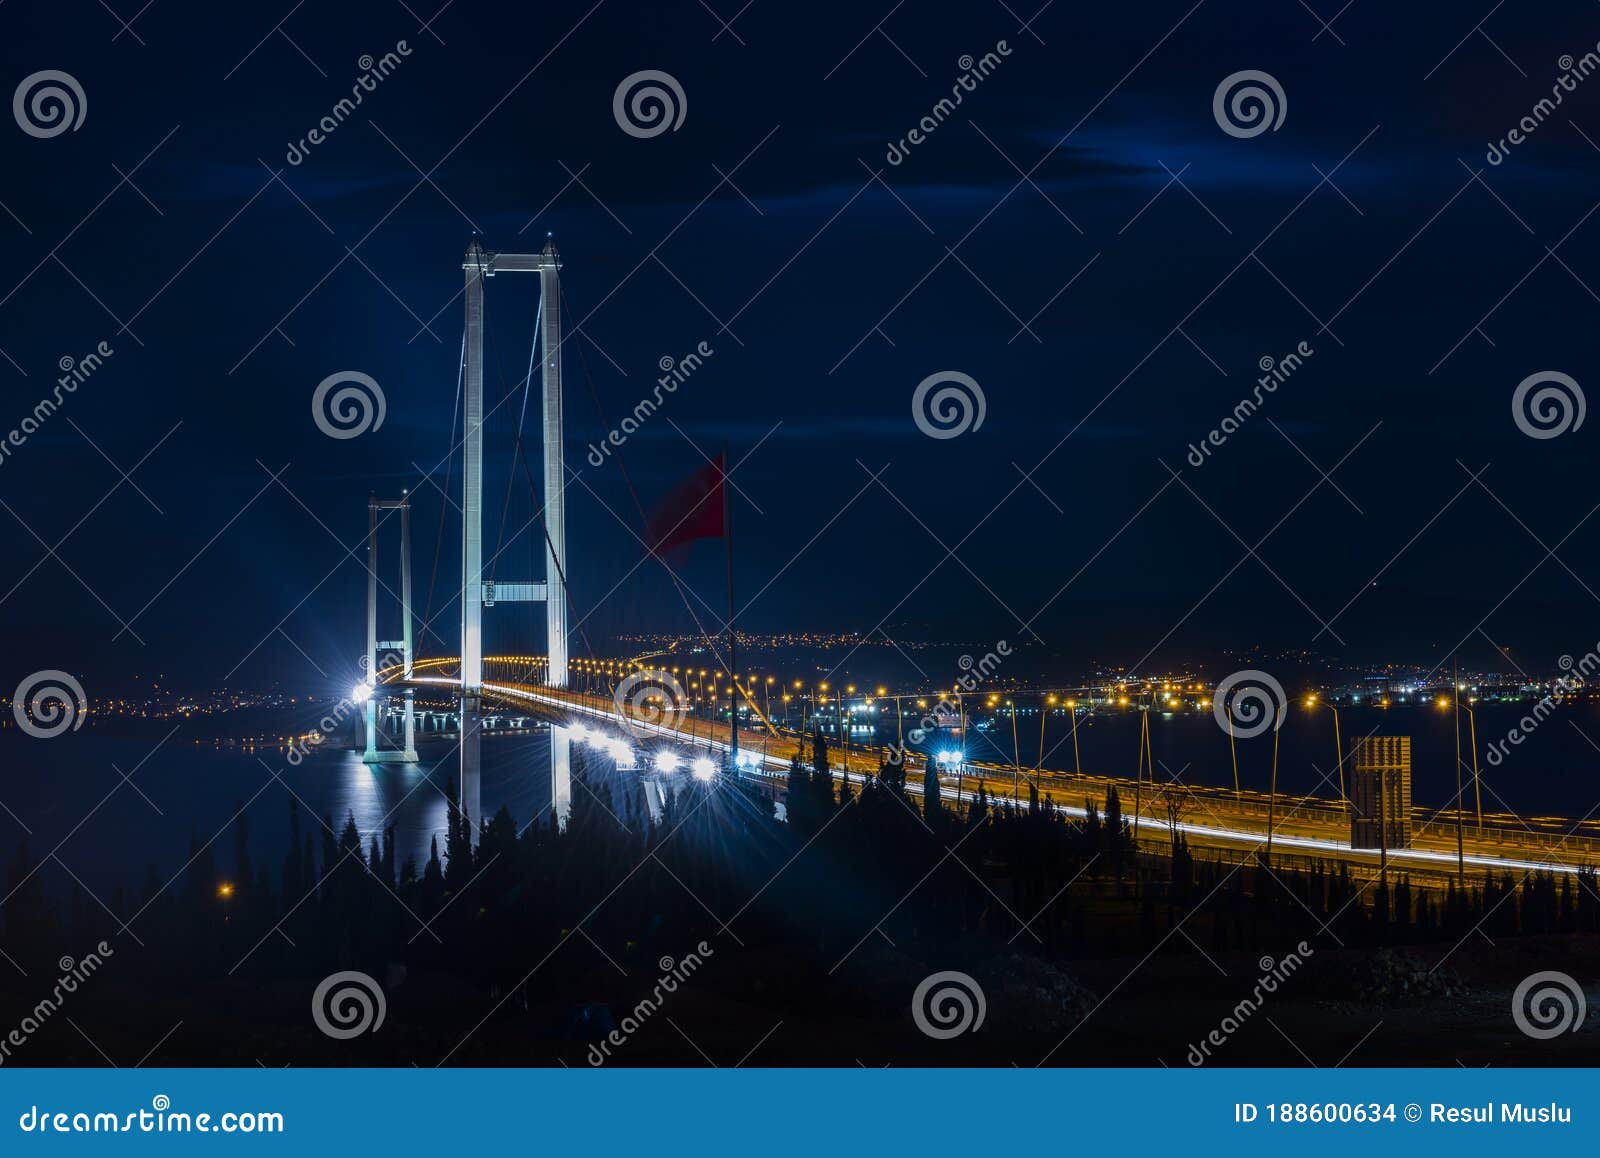 osman gazi bridge in izmit, kocaeli, turkey